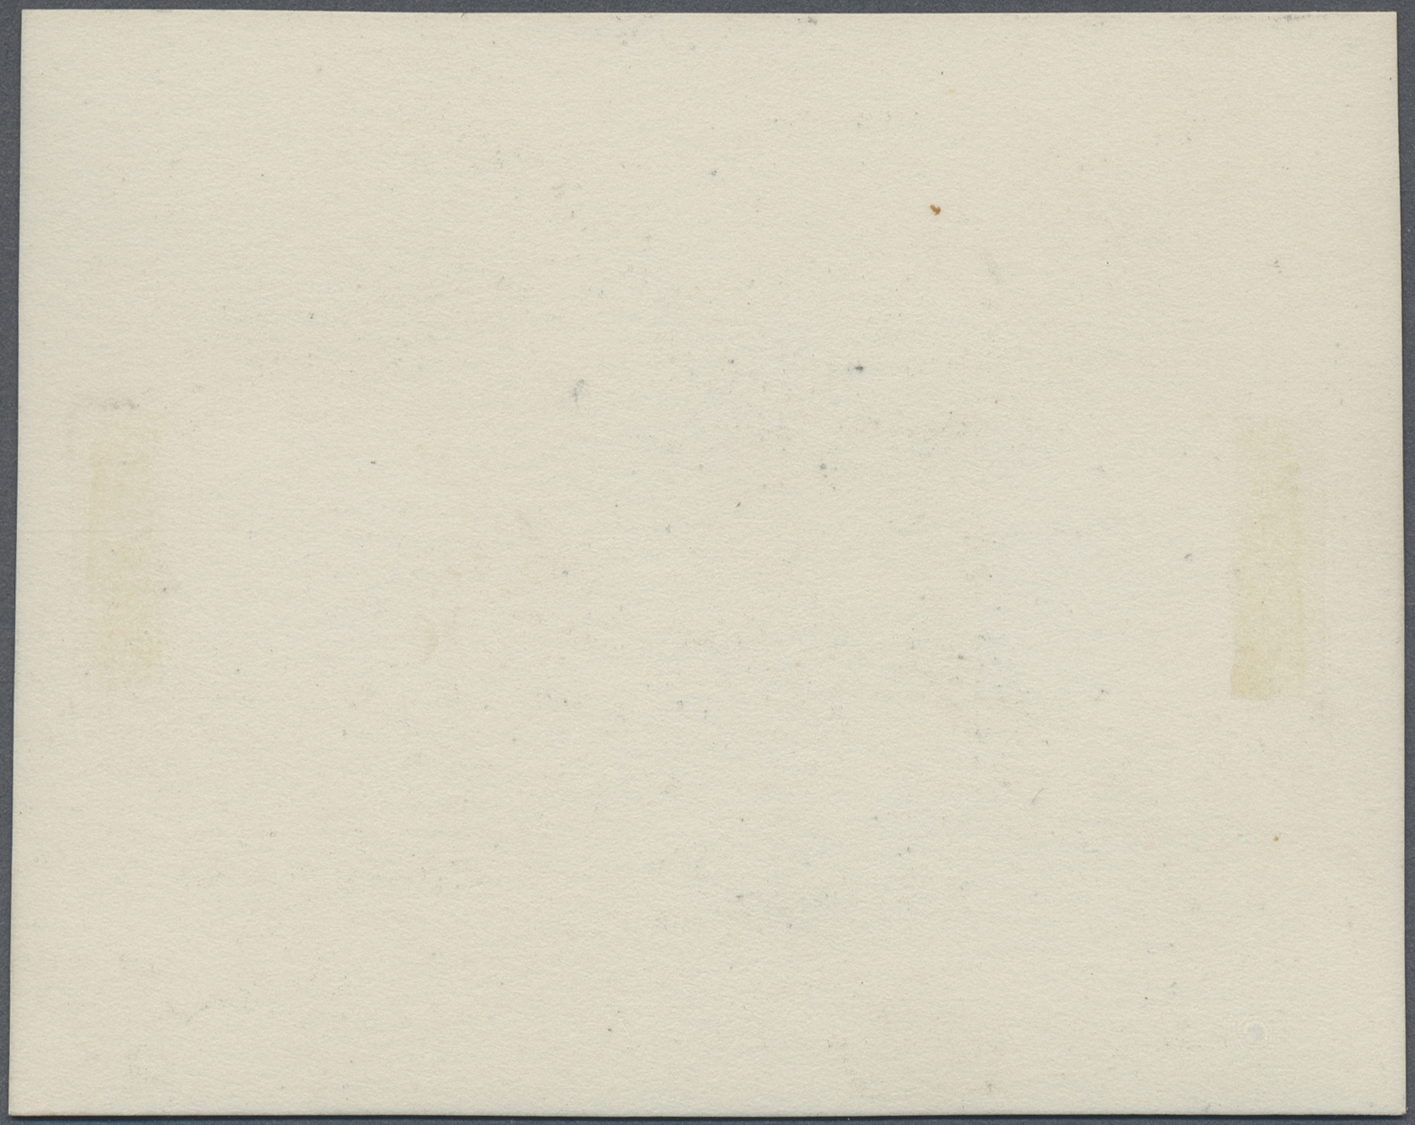 (*) Frankreich: 1850/1860 (ca.), Fünf Verschiedene Sperati-Reproduktionen In Blockform - Used Stamps